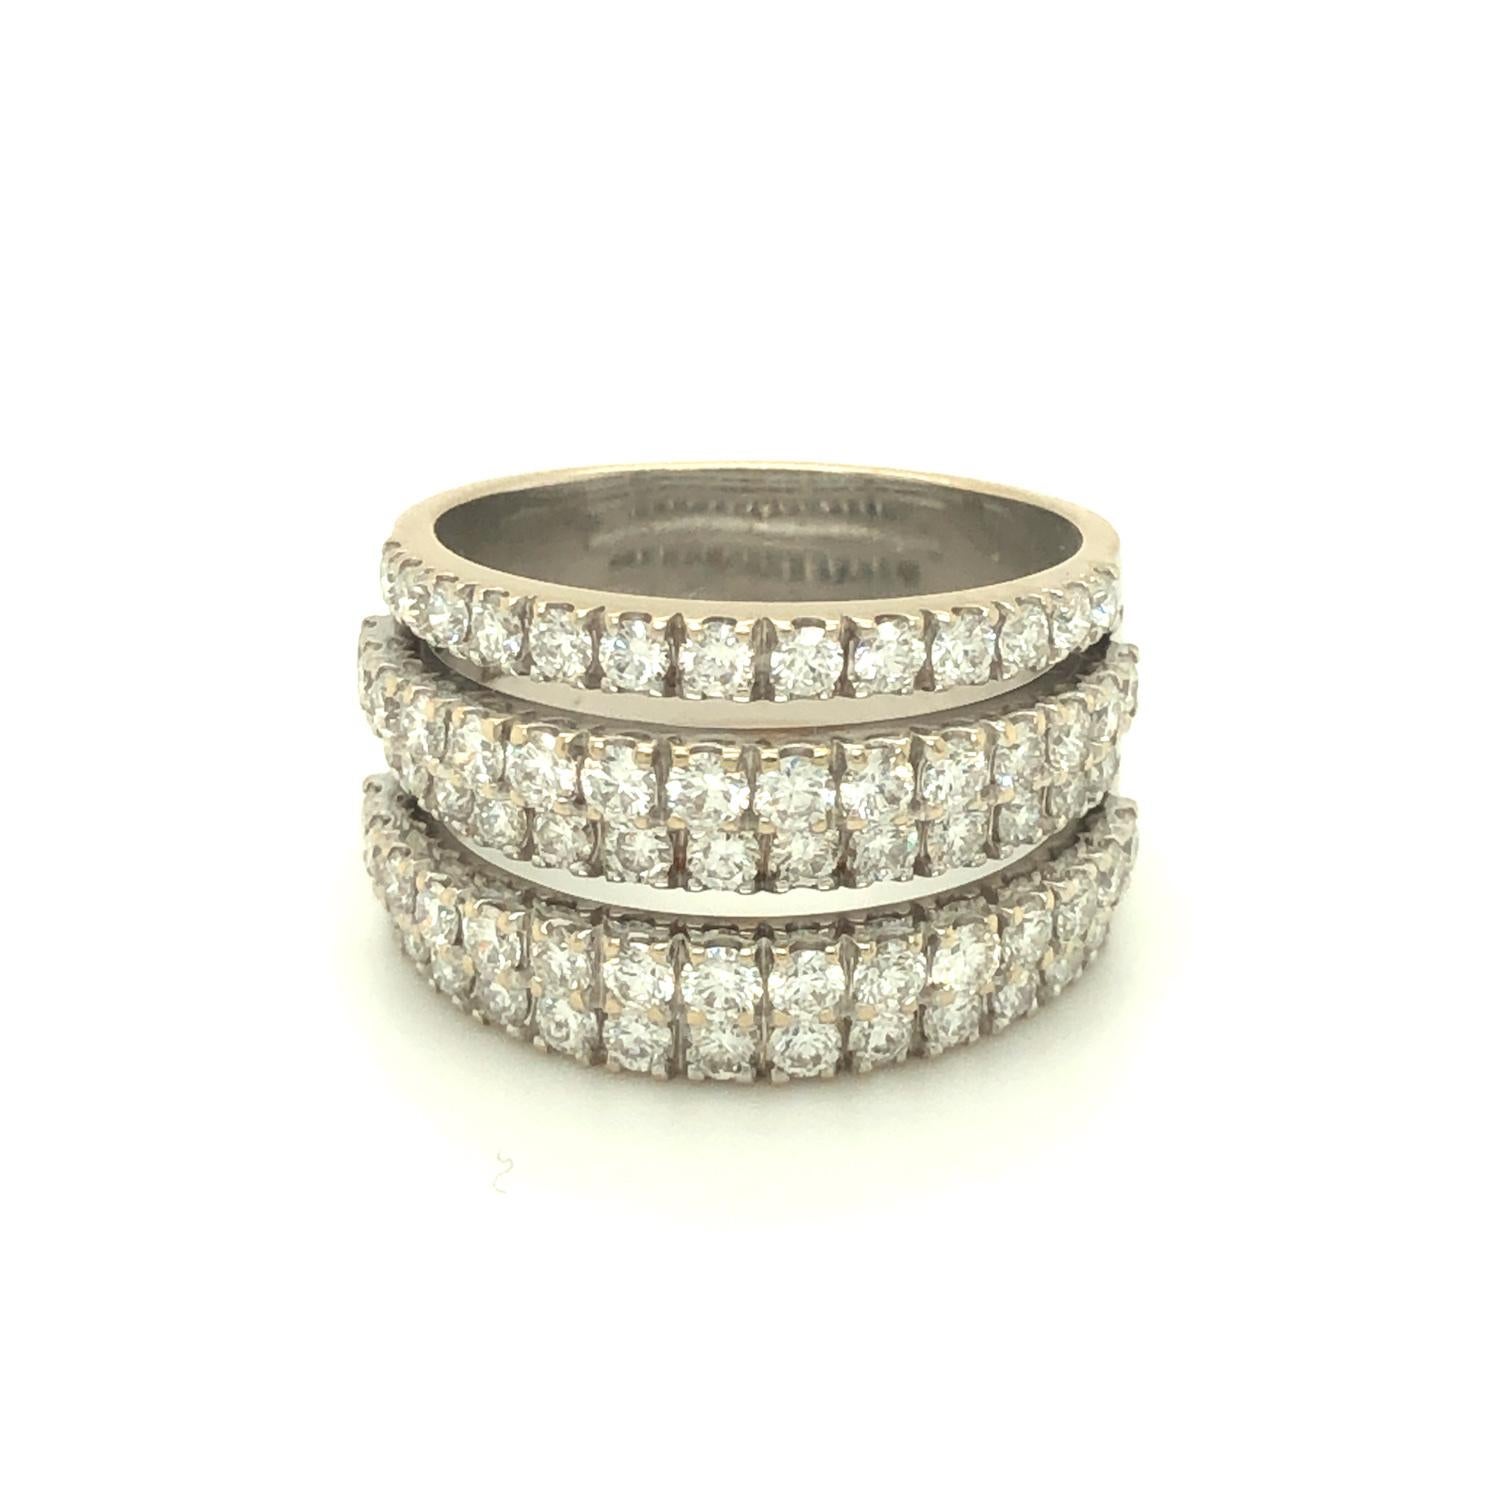 Bague en diamant moderne et élégante de De Beers avec cinq bandes superposées de diamants ronds brillants sertis en pavé. La bande fait 13 mm de large. Le poids total du diamant est d'environ 1,75 carat. Taille 7.